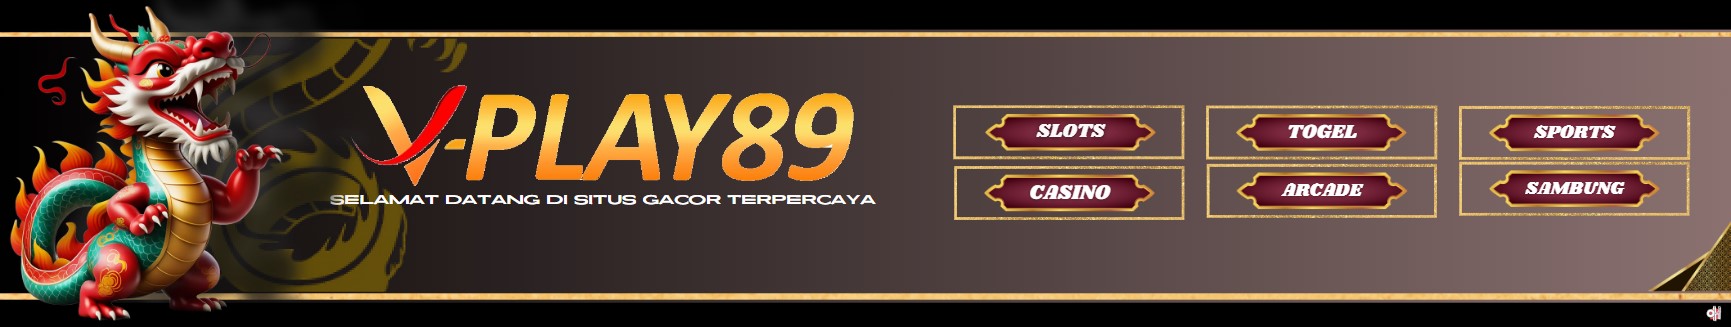 VPlay89